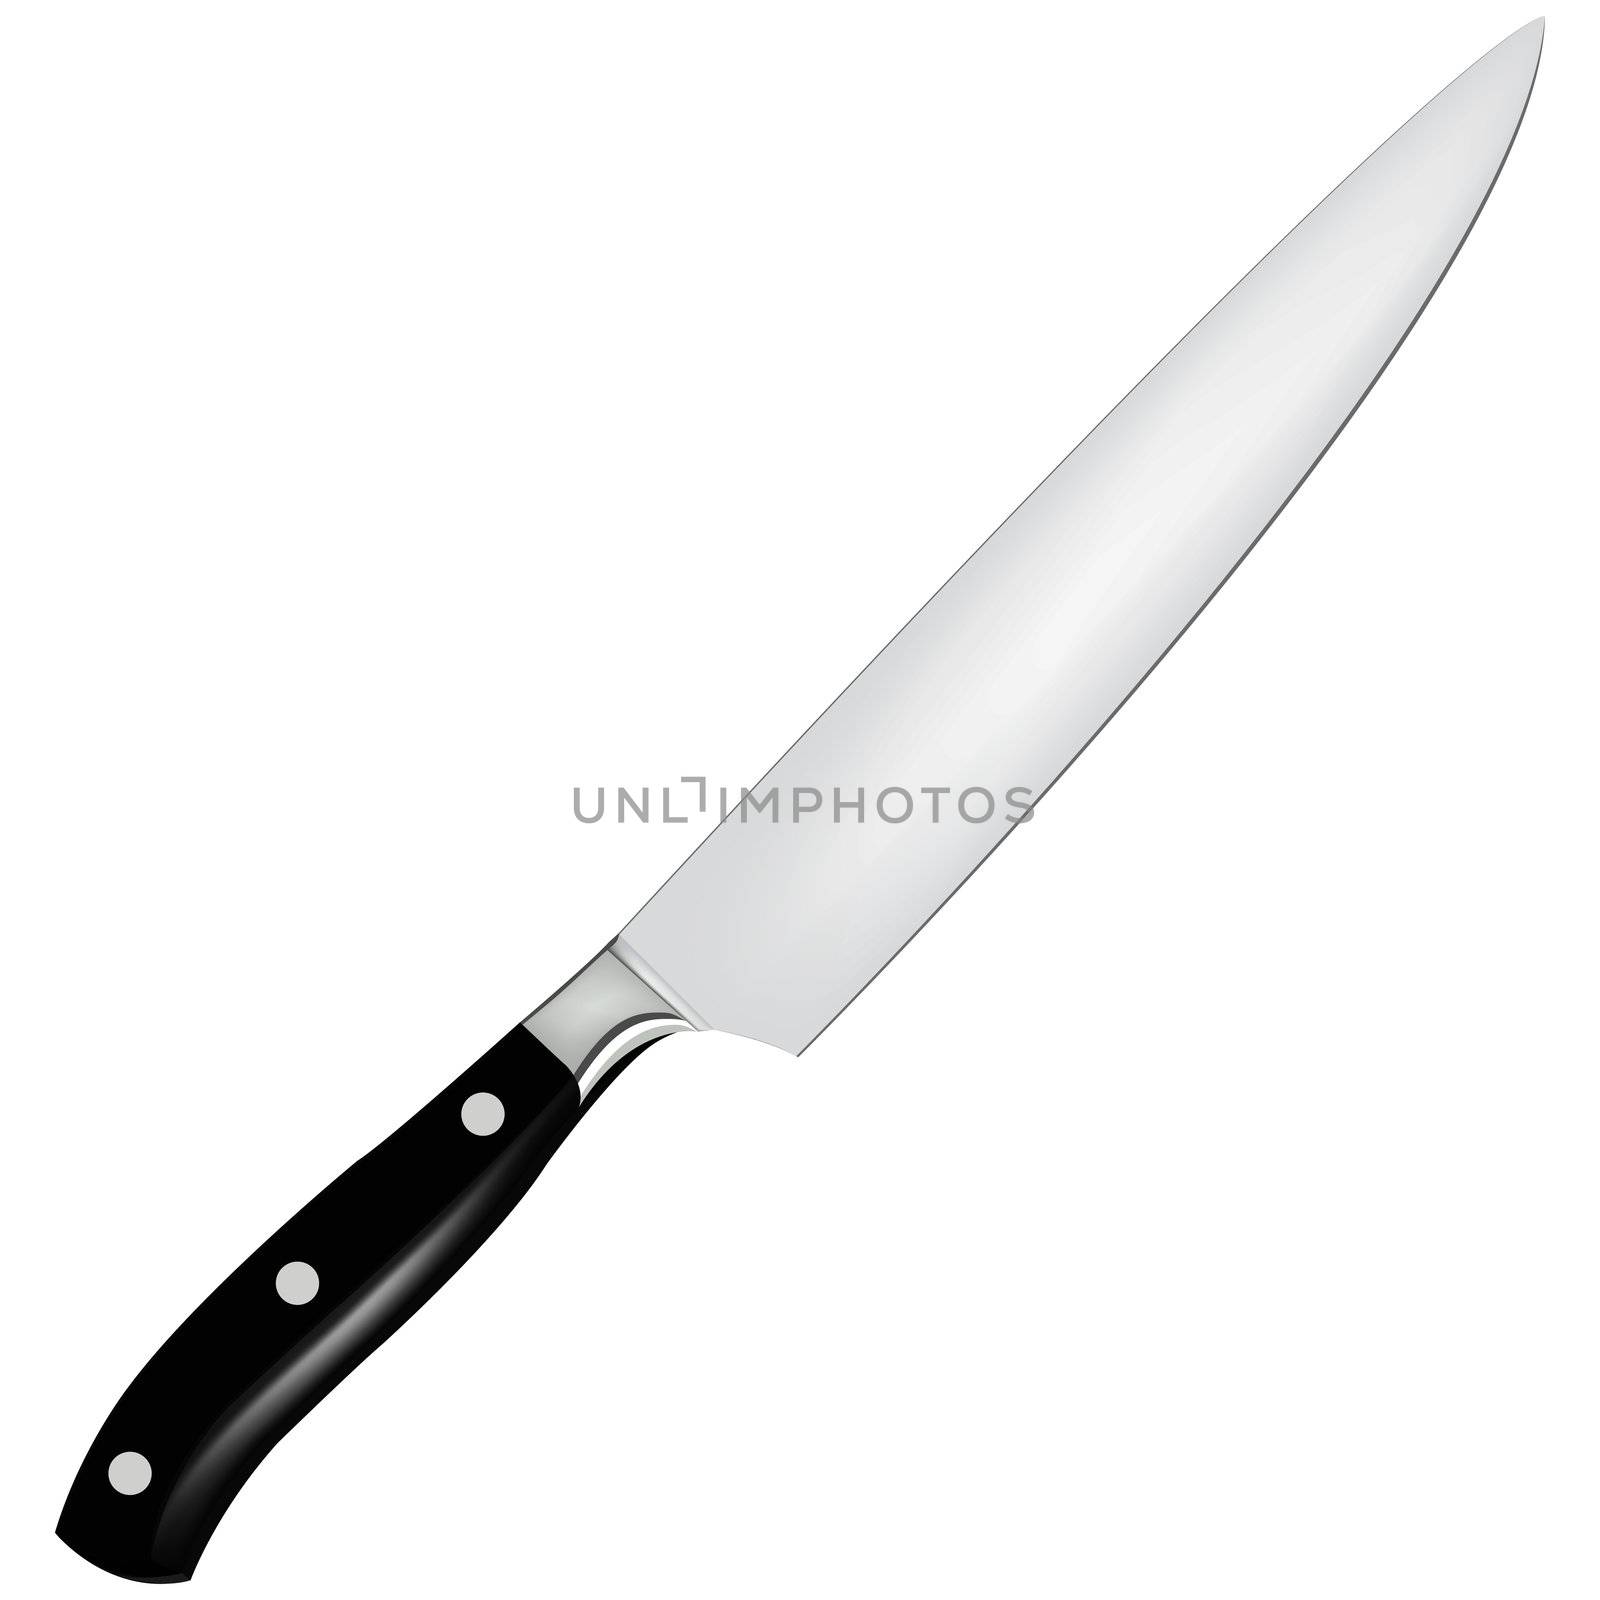 Knife on a white background by sergey150770SV